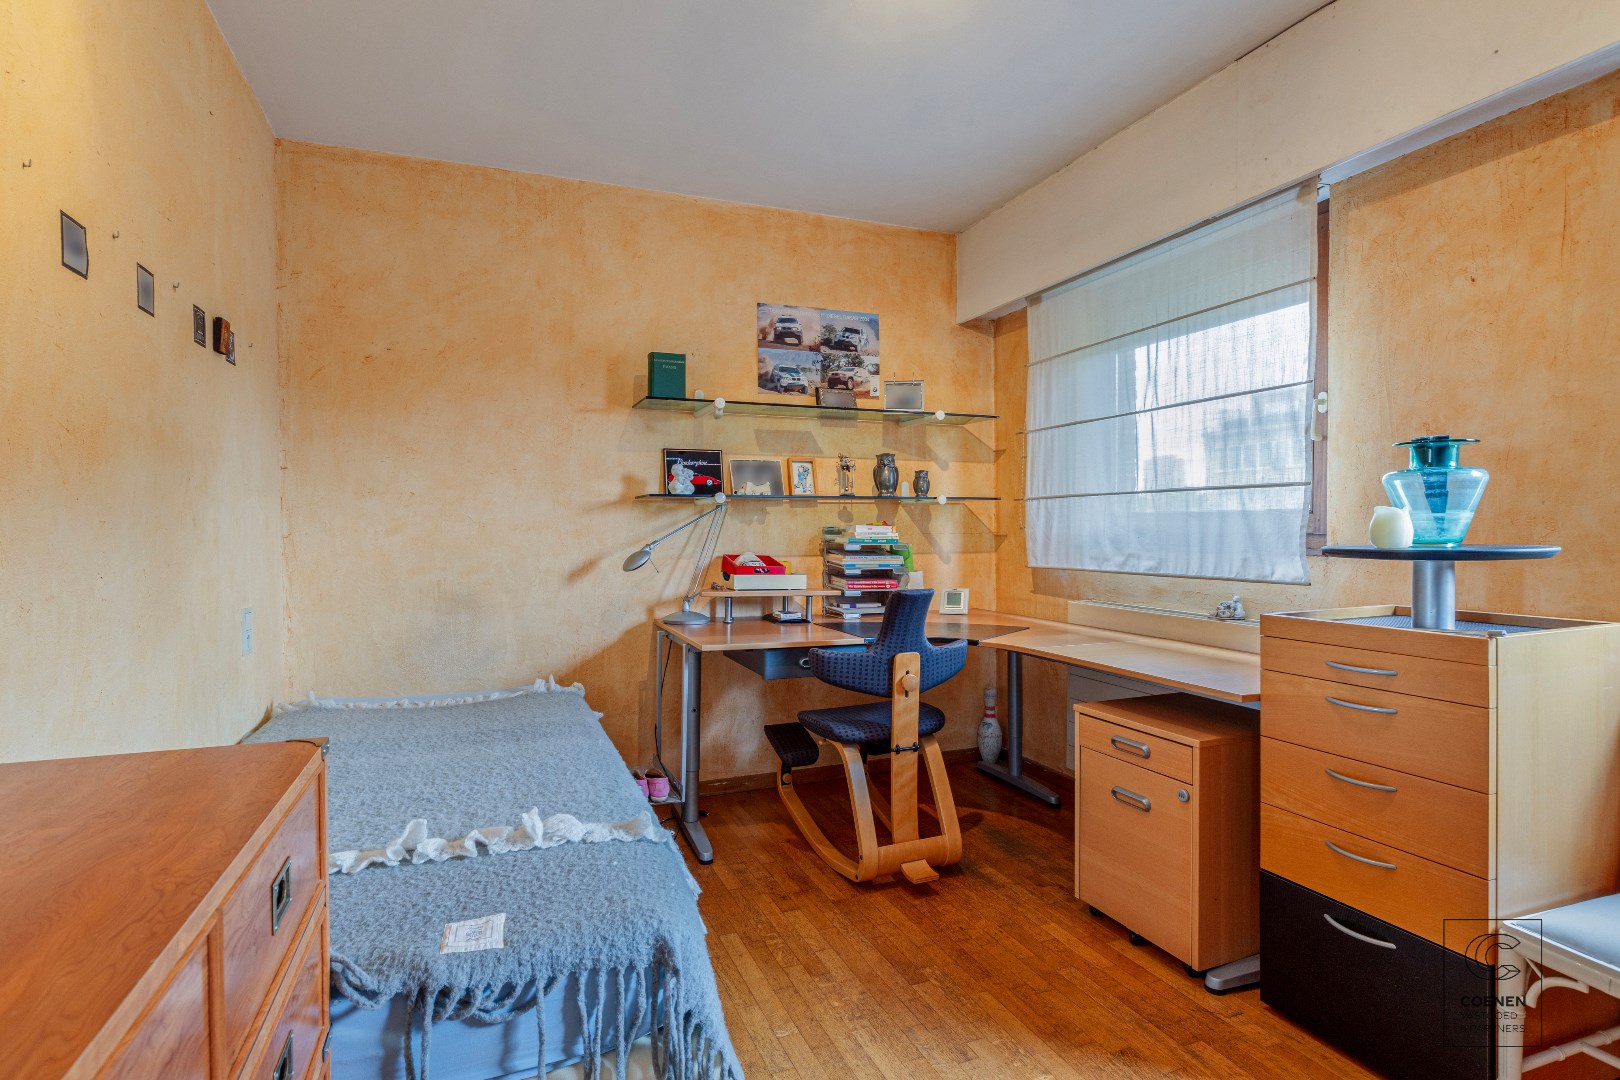 Centraal gelegen woning (4 slaapkamers) met praktijkruimte, tuin en nabijheid van voorzieningen in Antwerpen 